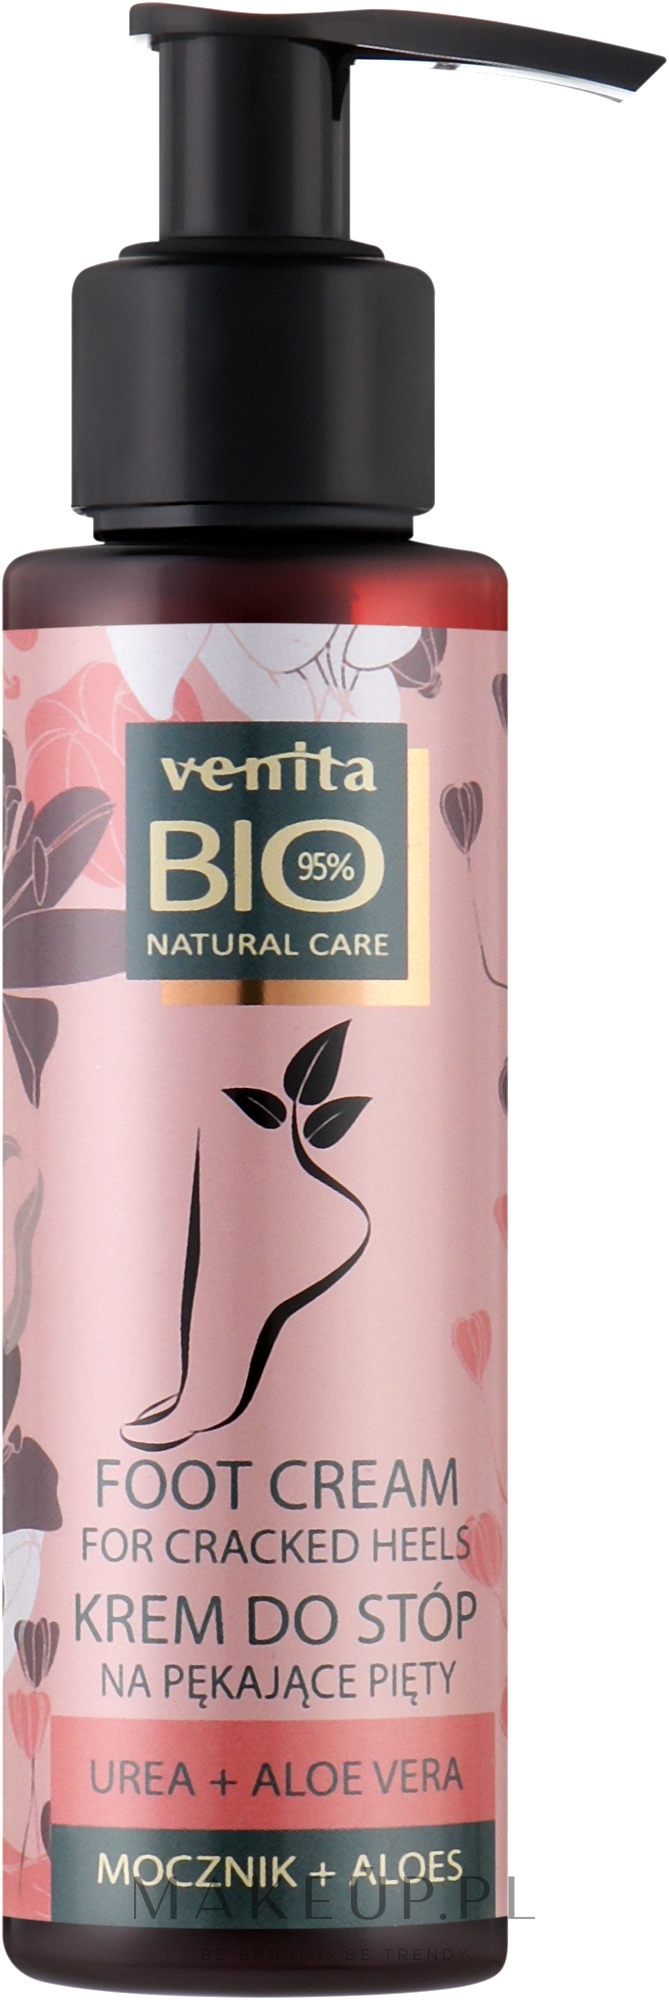 Krem na popękane pięty z mocznikiem i aloesem - Venita Bio Natural Care Foot Cream — Zdjęcie 100 g